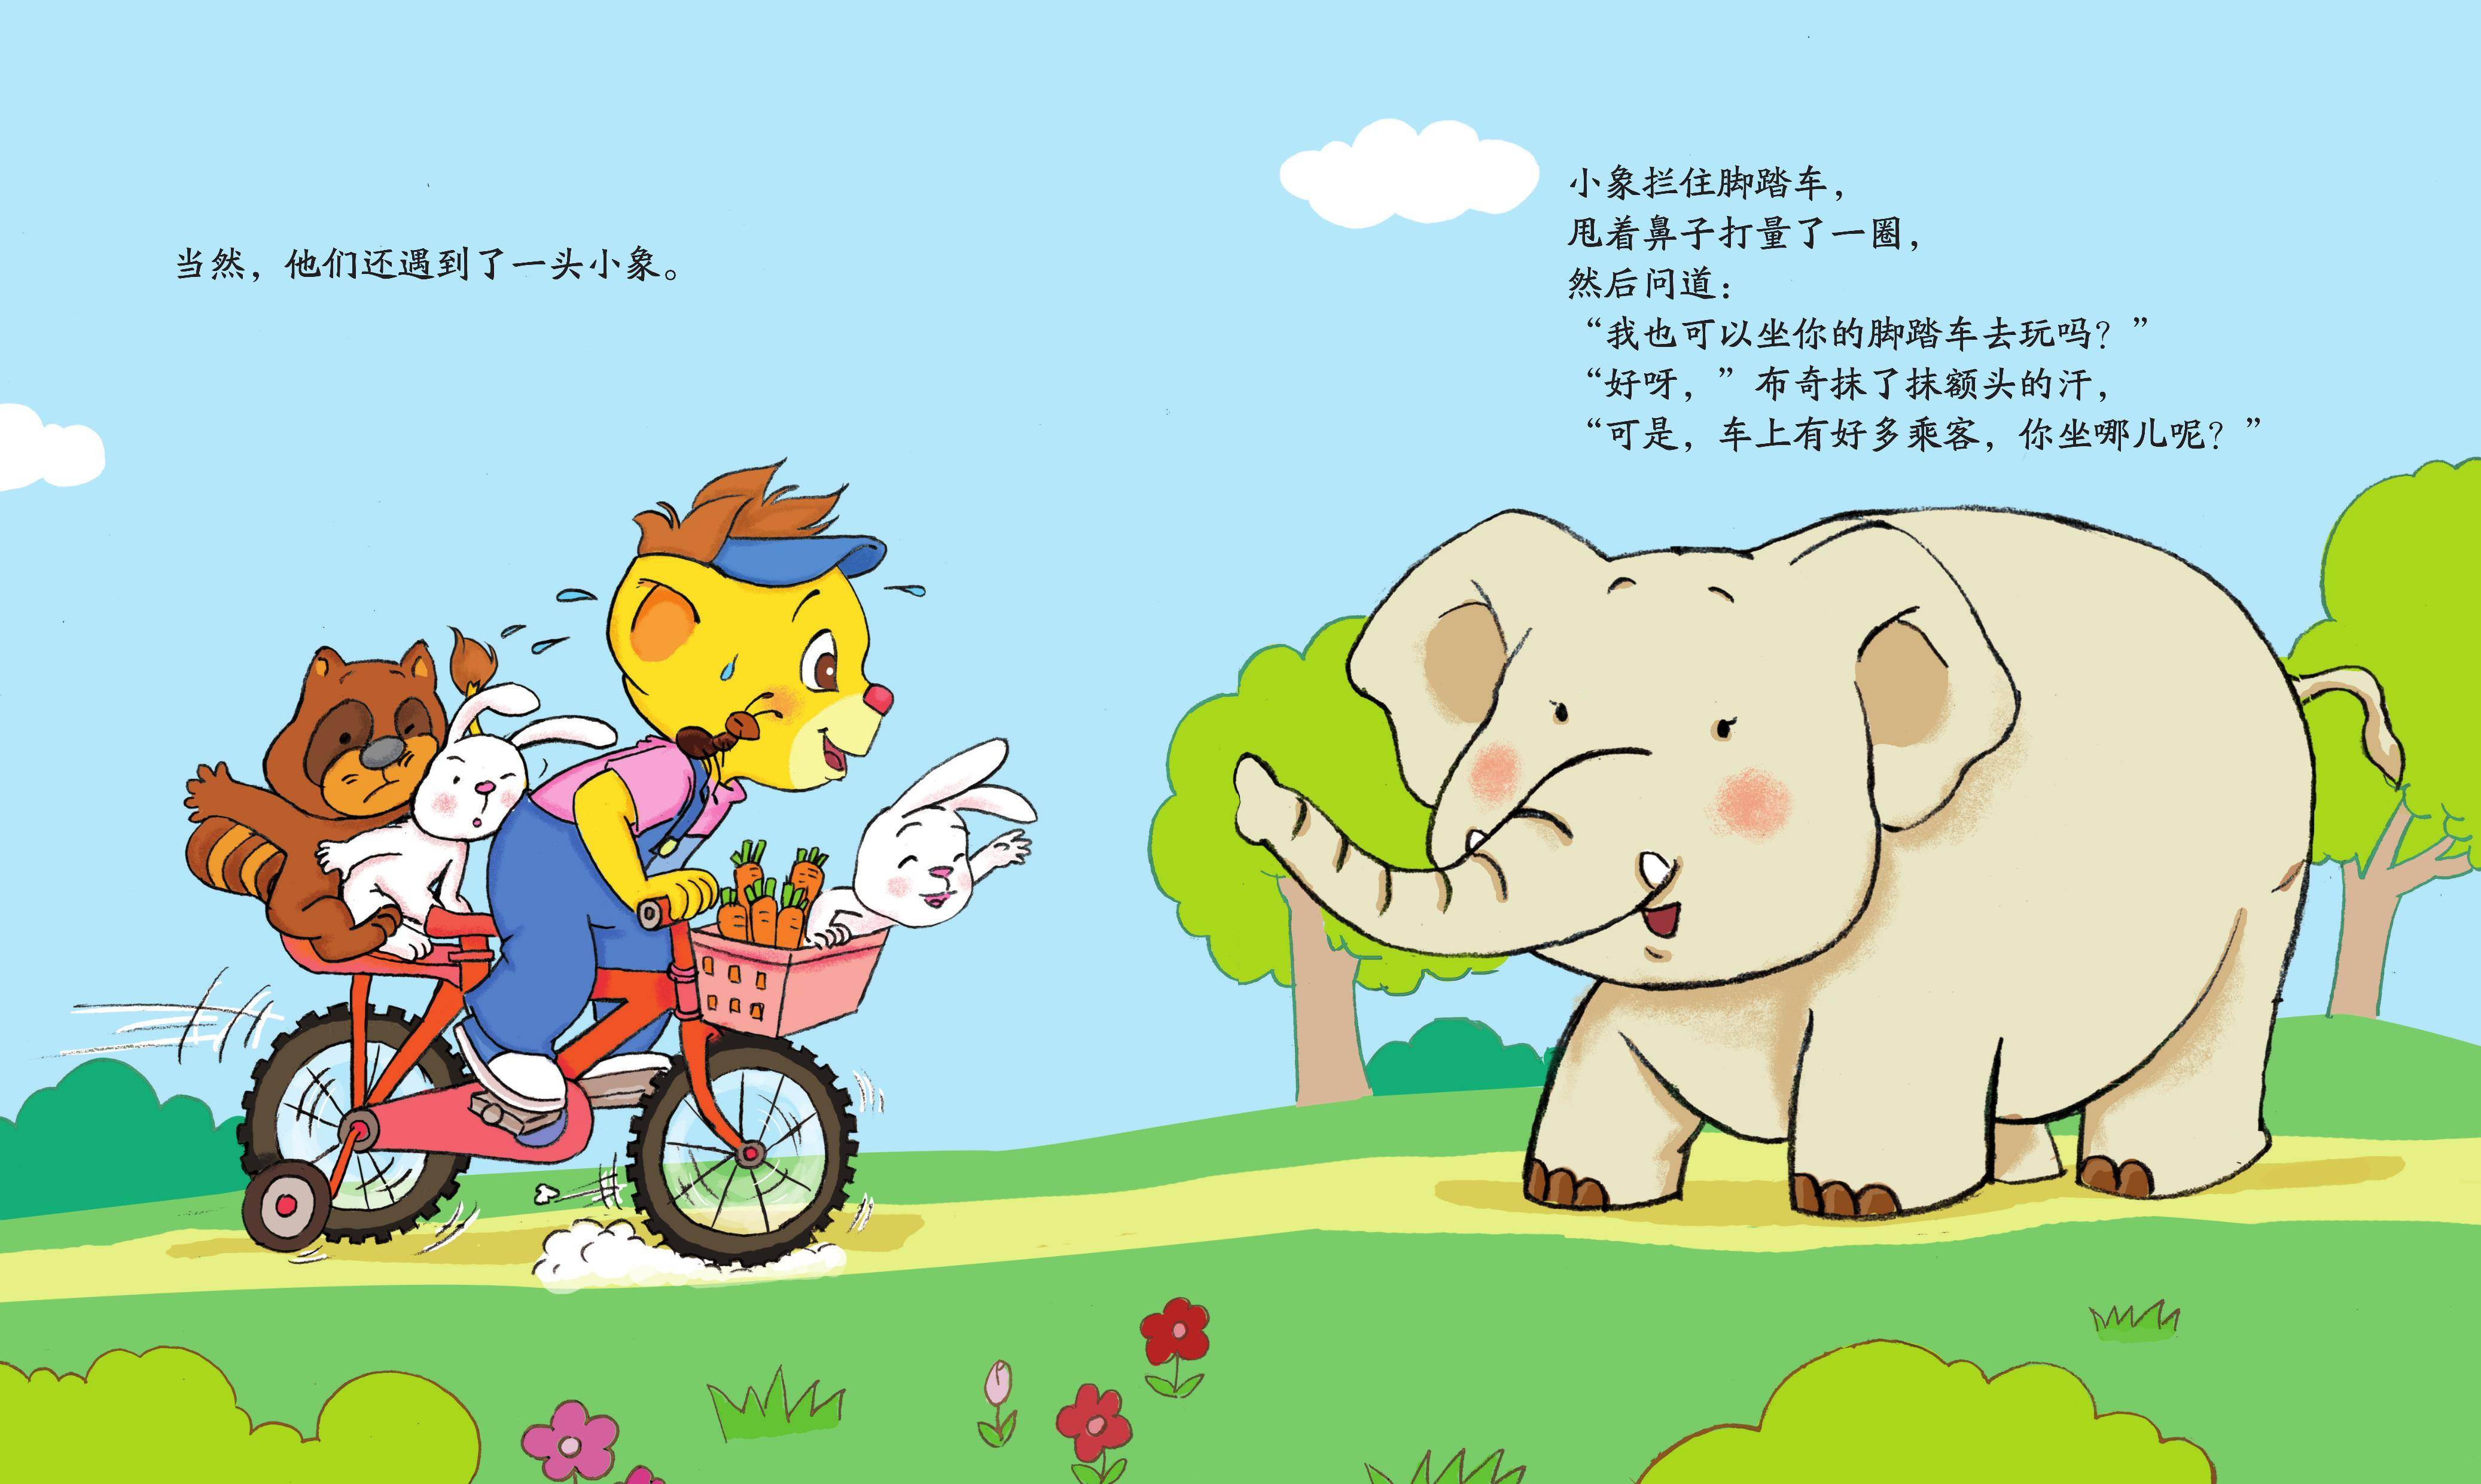 自行车小故事2动画版gif下载,自行车小故事2无修gif动画原版图片高清版下载 v1.0 - 浏览器家园